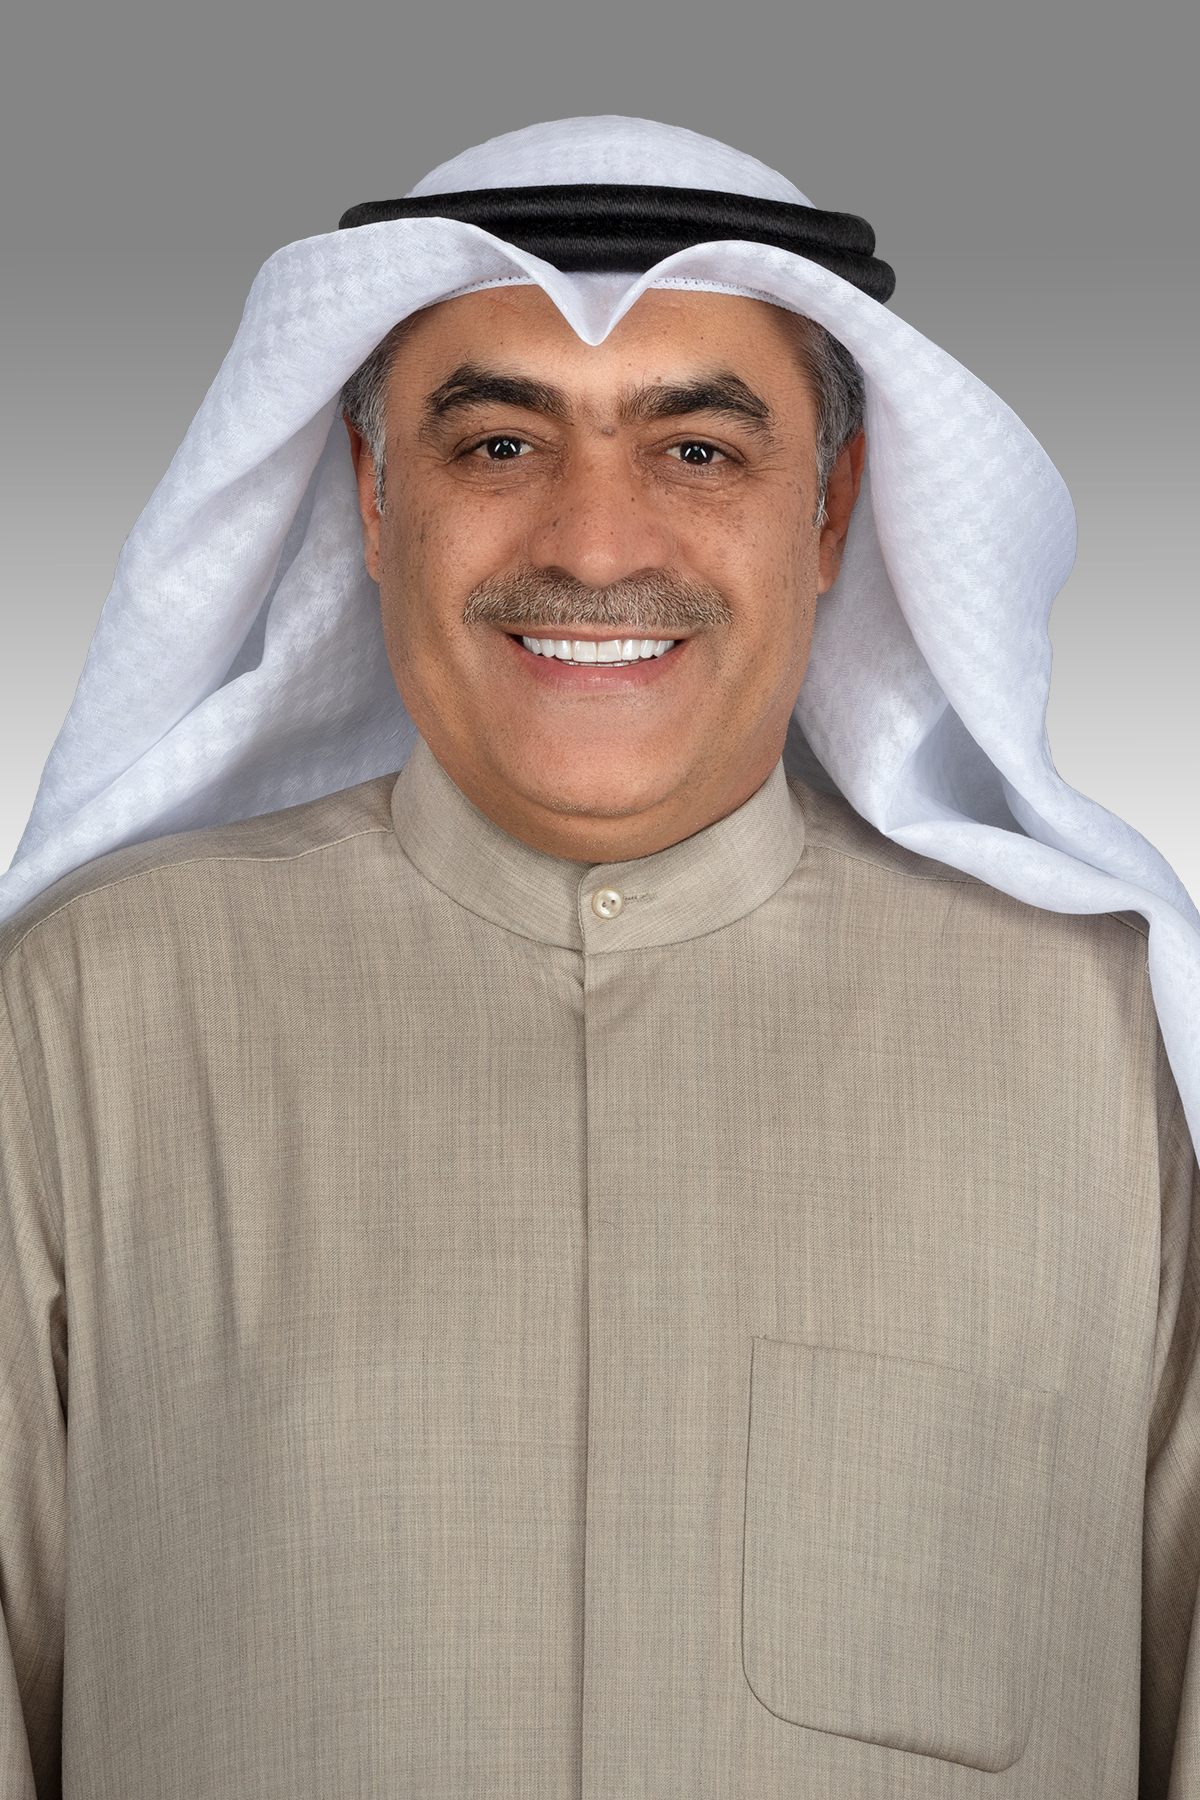 خالد العنزي يوجه سؤالاً إلى وزير الشؤون الاجتماعية